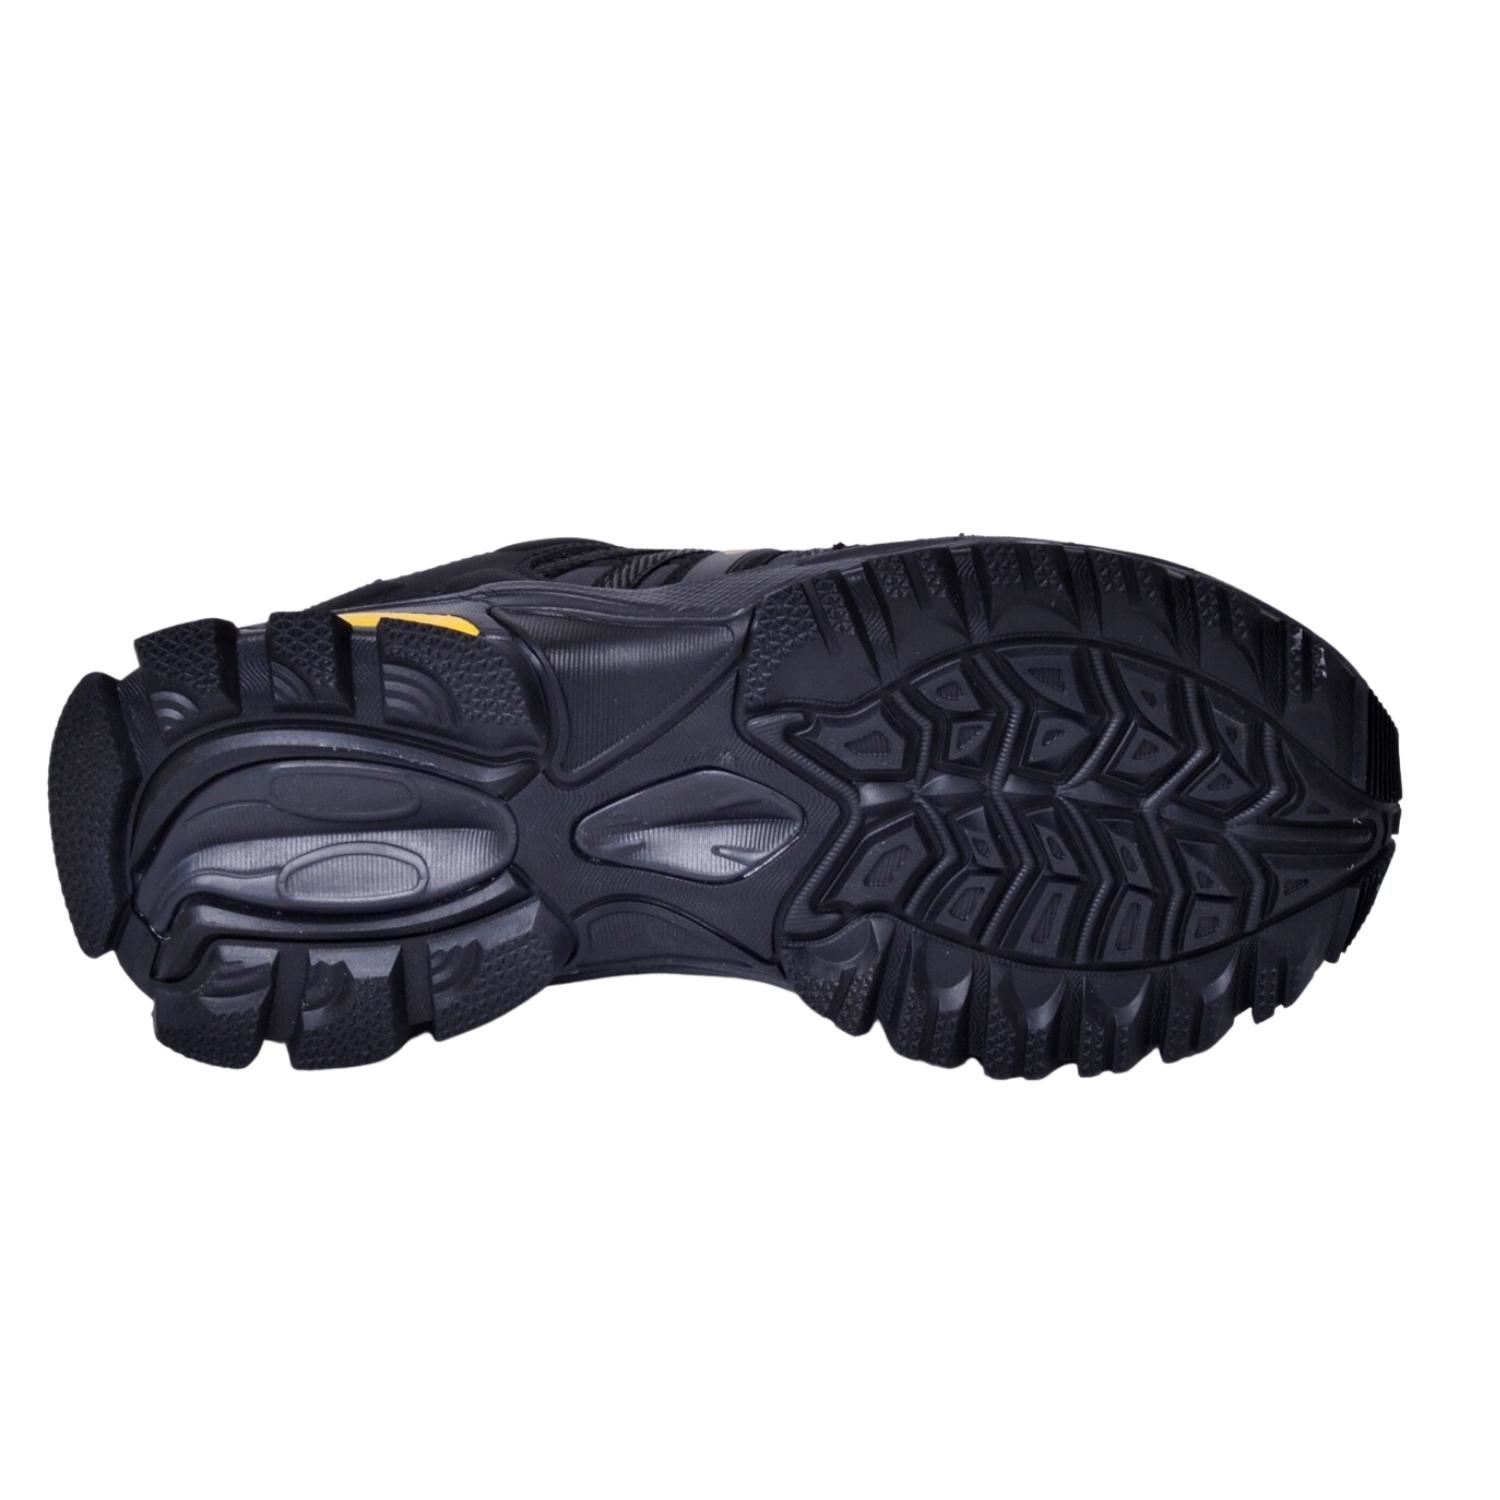 Hammerjack 23012 Migos Kadın Siyah Su Geçirmez Ayakkabı